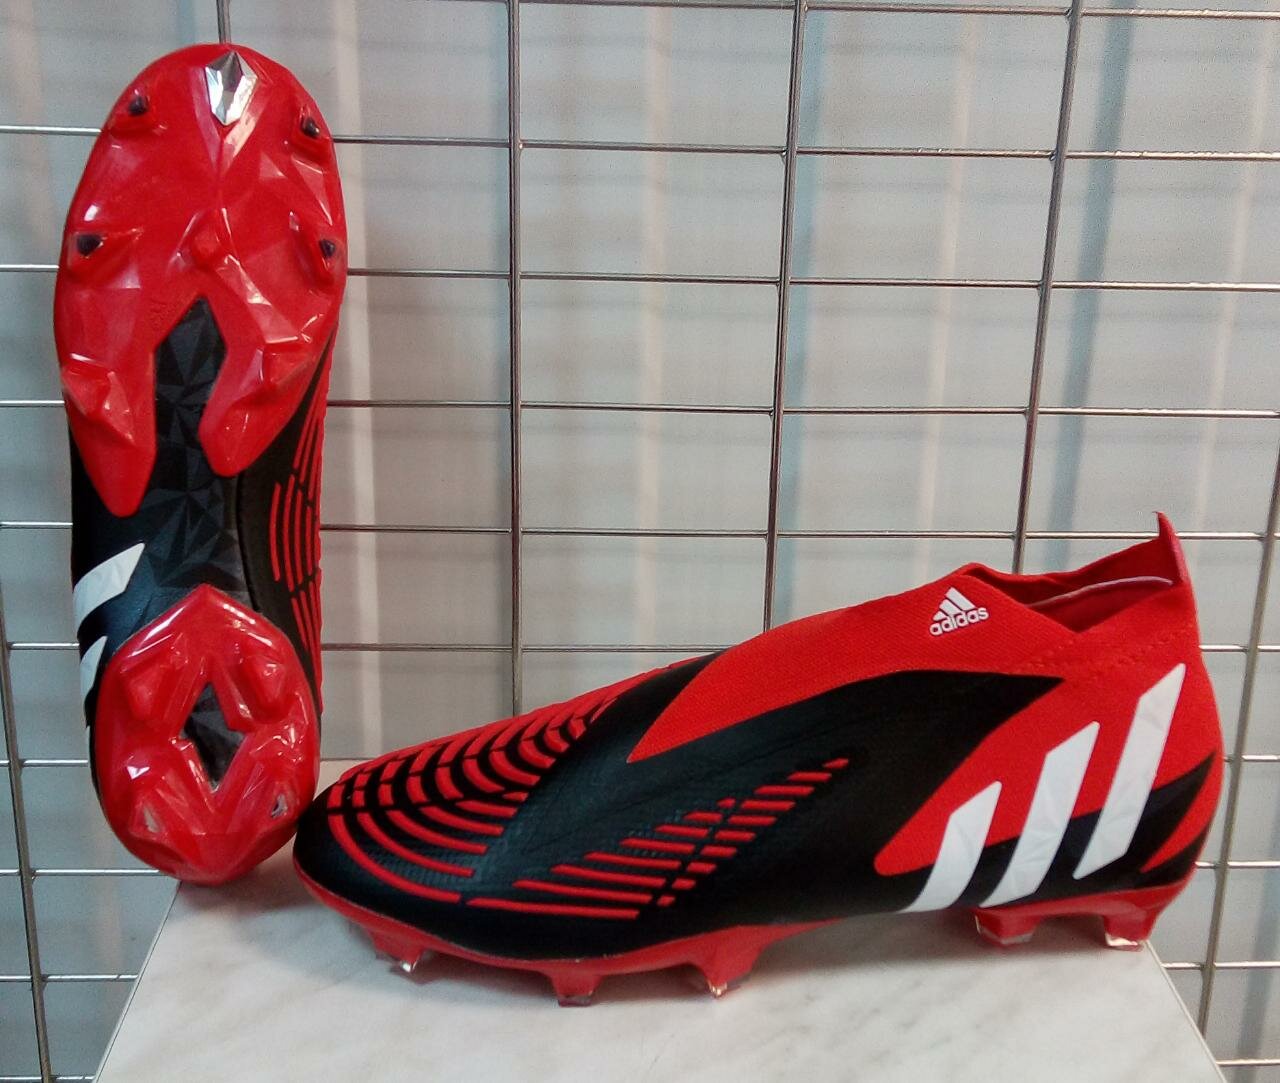 Для футбола ADIDAS PREDATOR размер 42 ( длина по стельке 26 см ) бутсы футбольные и регбийные Красные